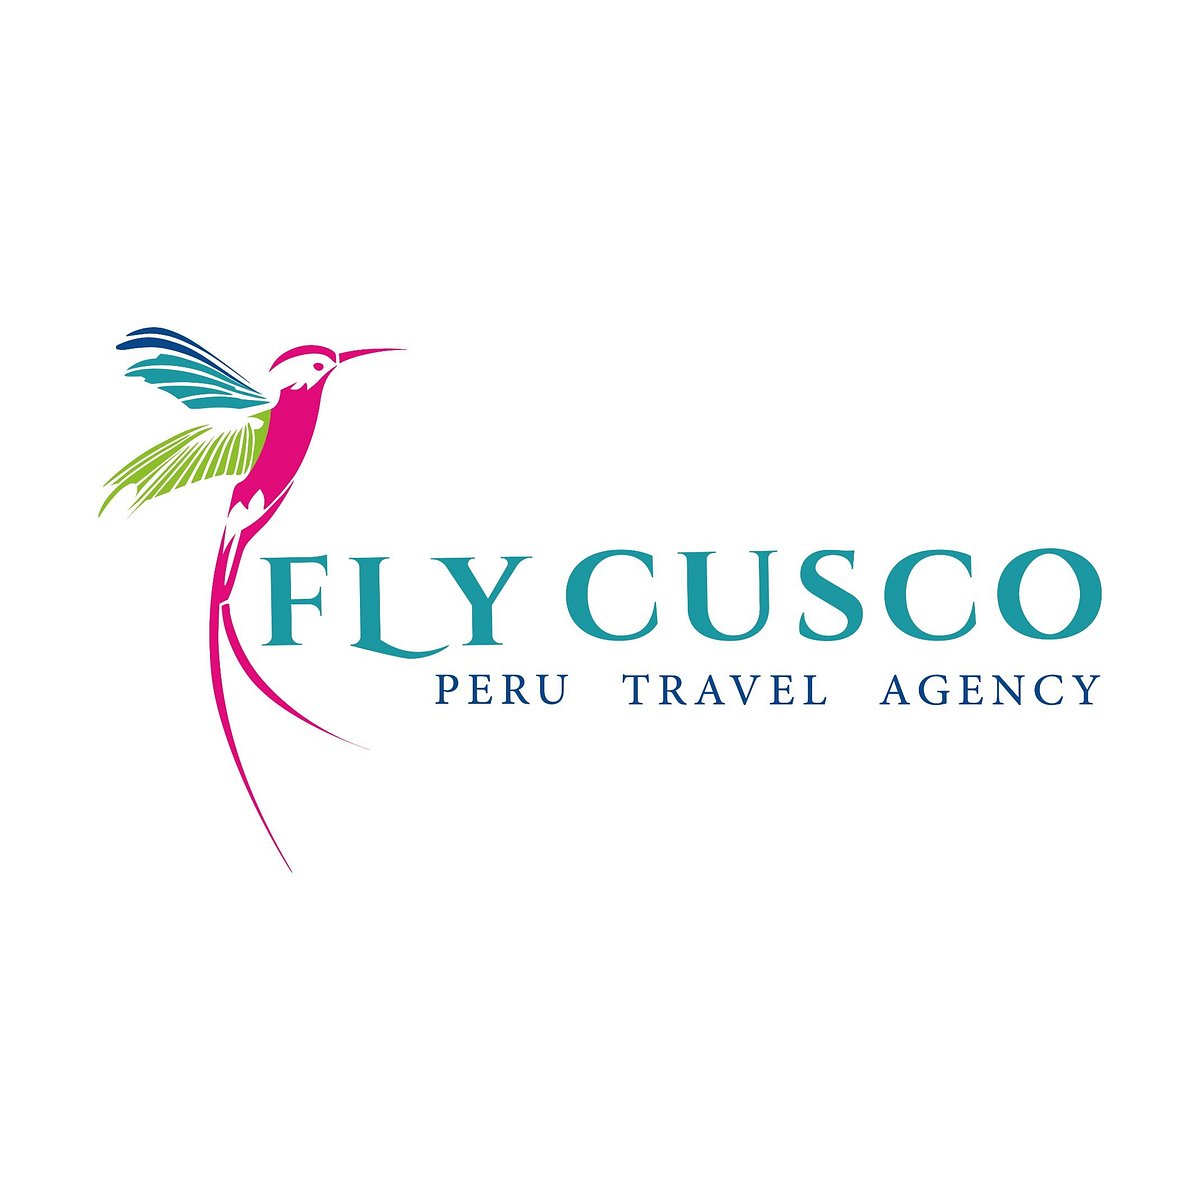 fly cusco peru travel agency